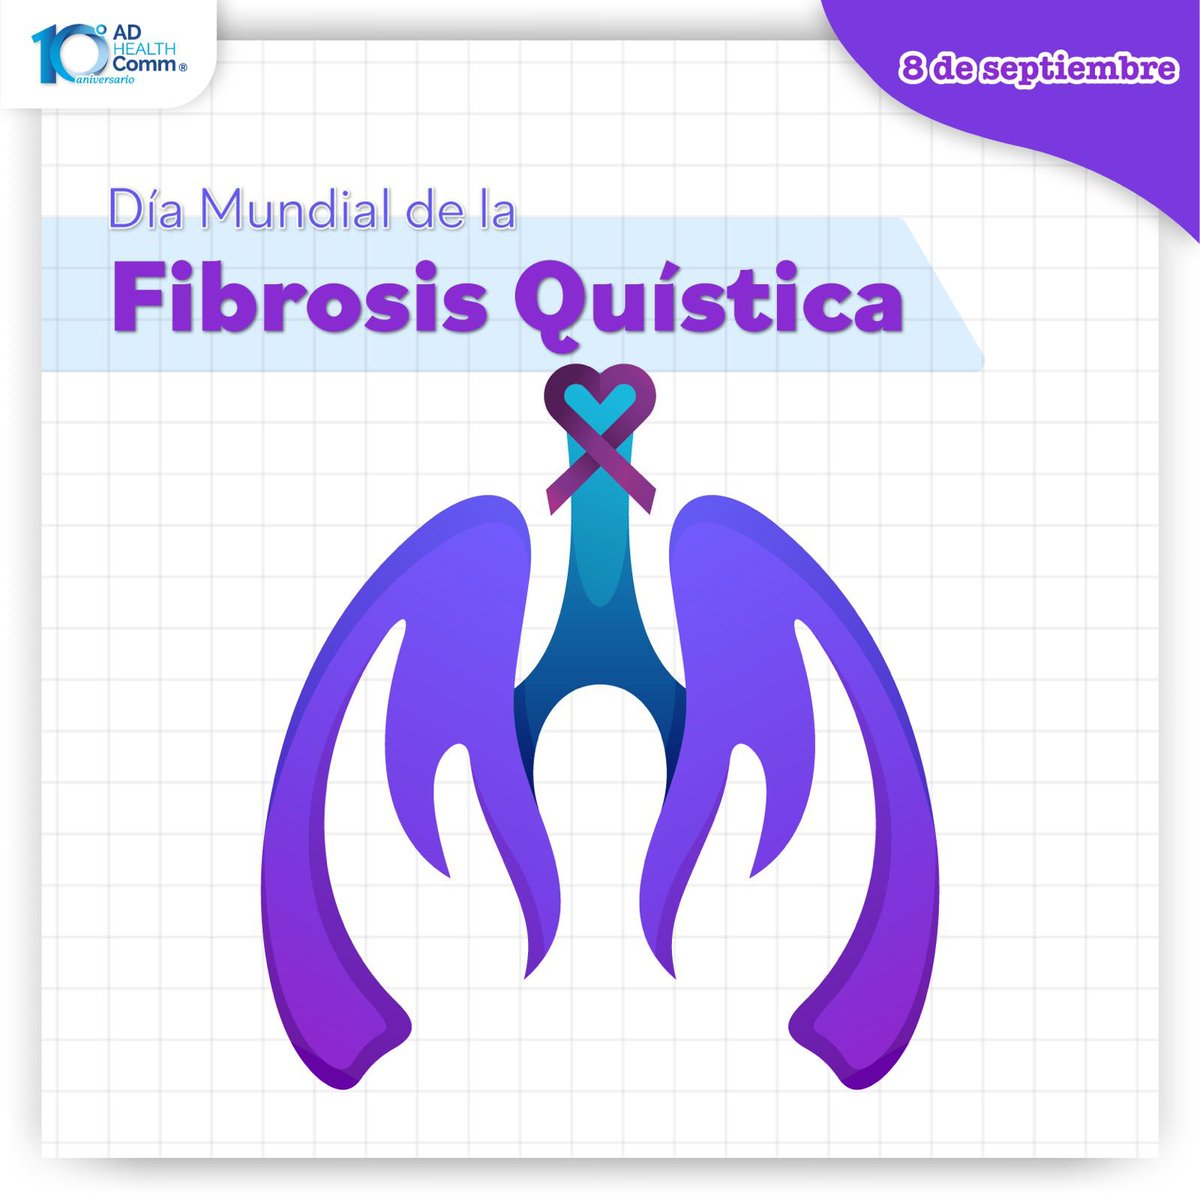 Hilo sobre el Día Mundial de la Fibrosis Quística:

#FibrosisQuistica #DiaMundialdelaFibrosisQuistica